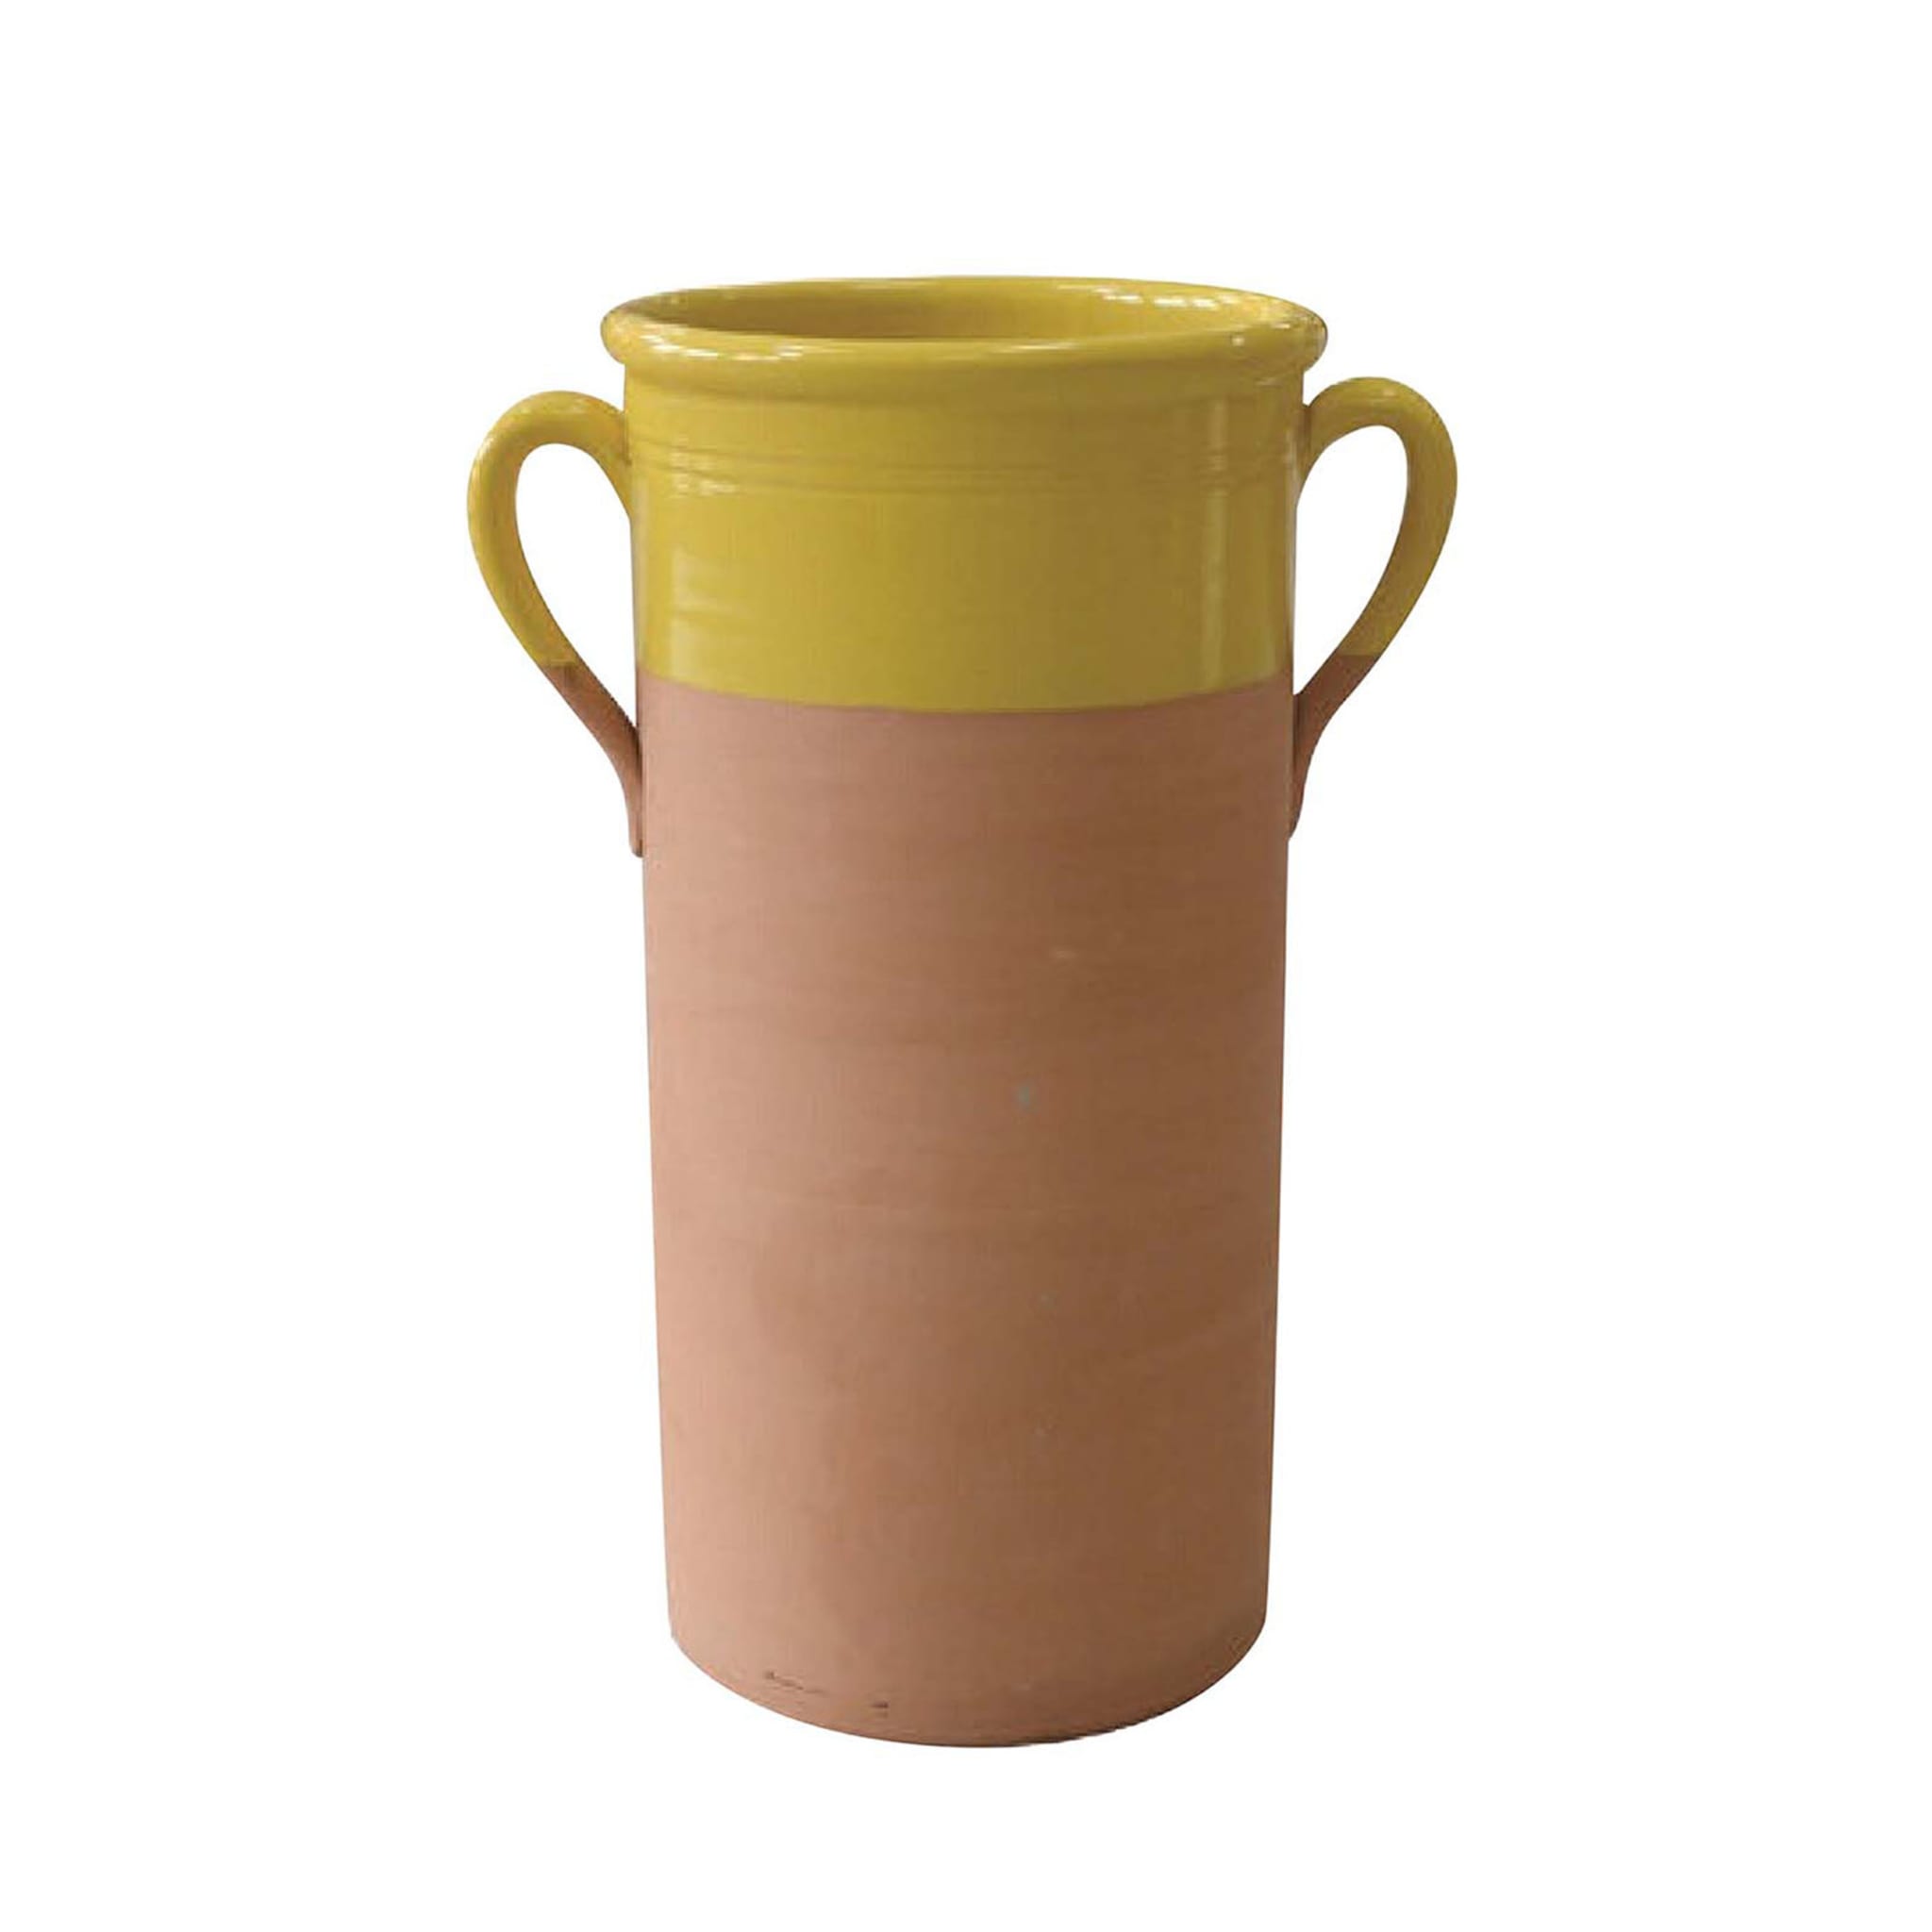 Grand vase cylindrique jaune avec anses - Vue principale